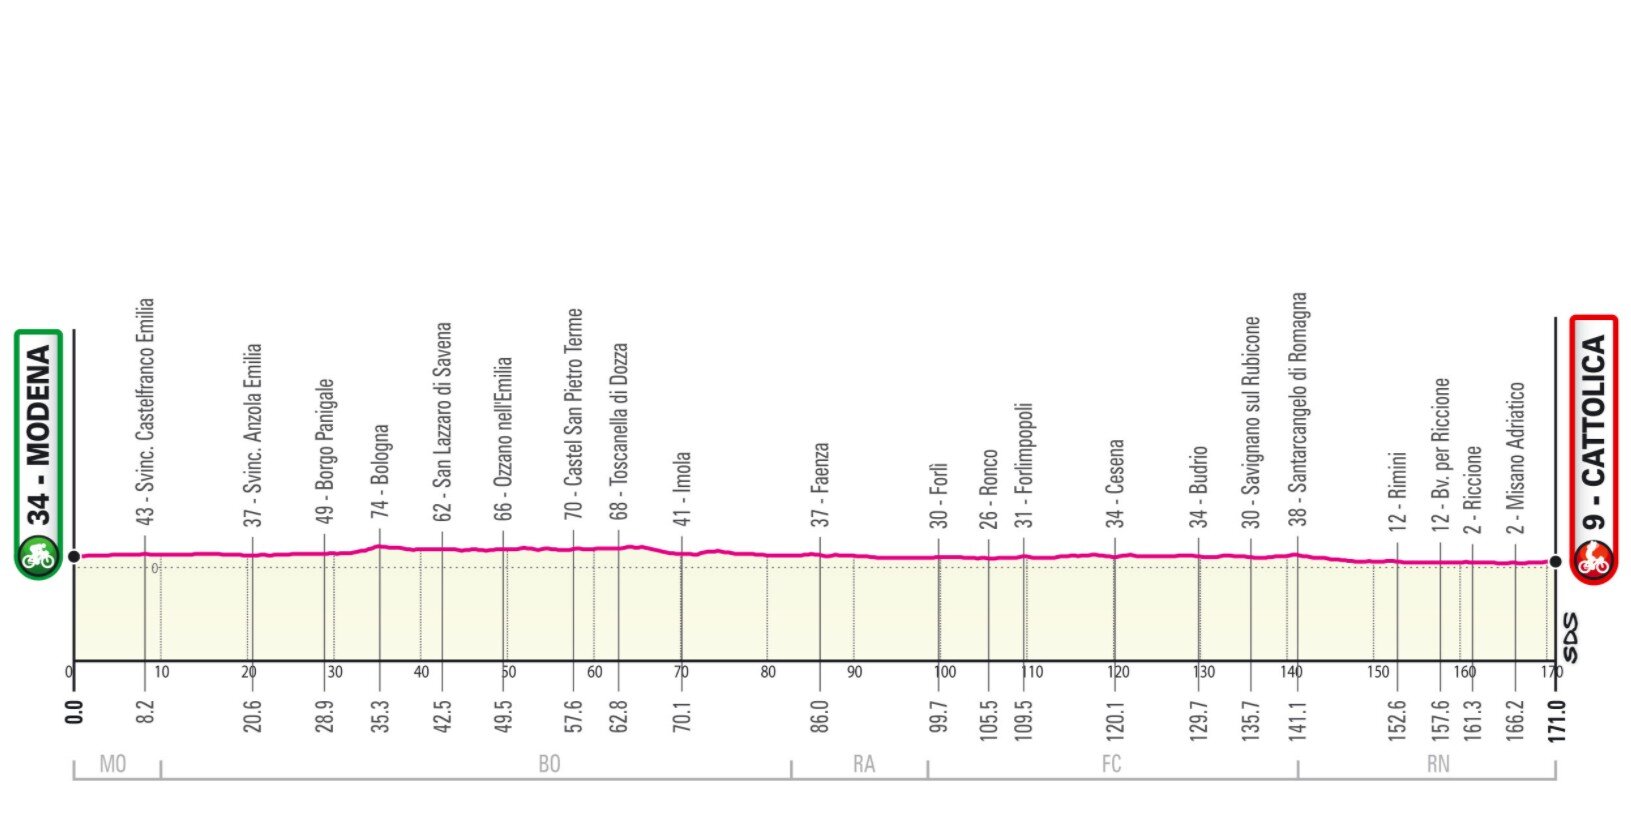 Etapa 5 Giro Italia 2021